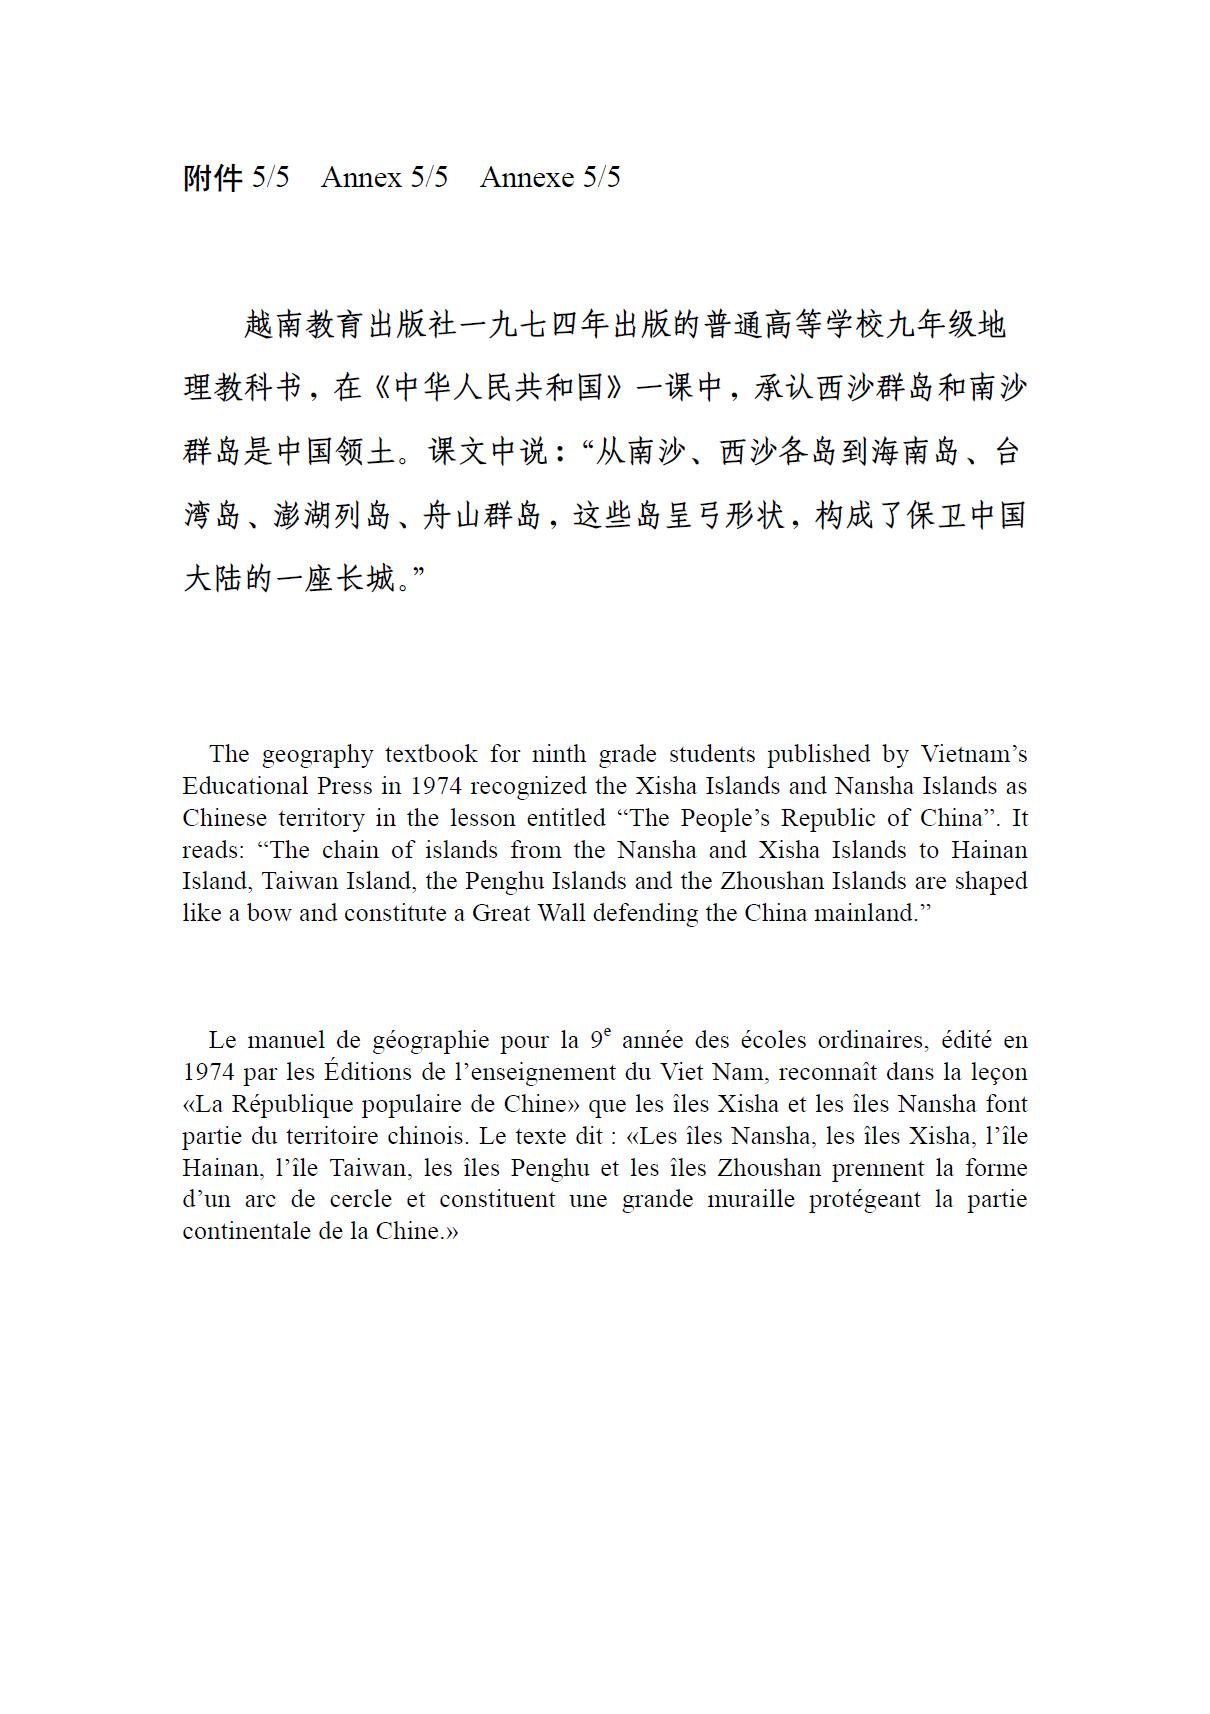 中国外交部在其网页保存越南承认中国南海主权教科书，供世人下载